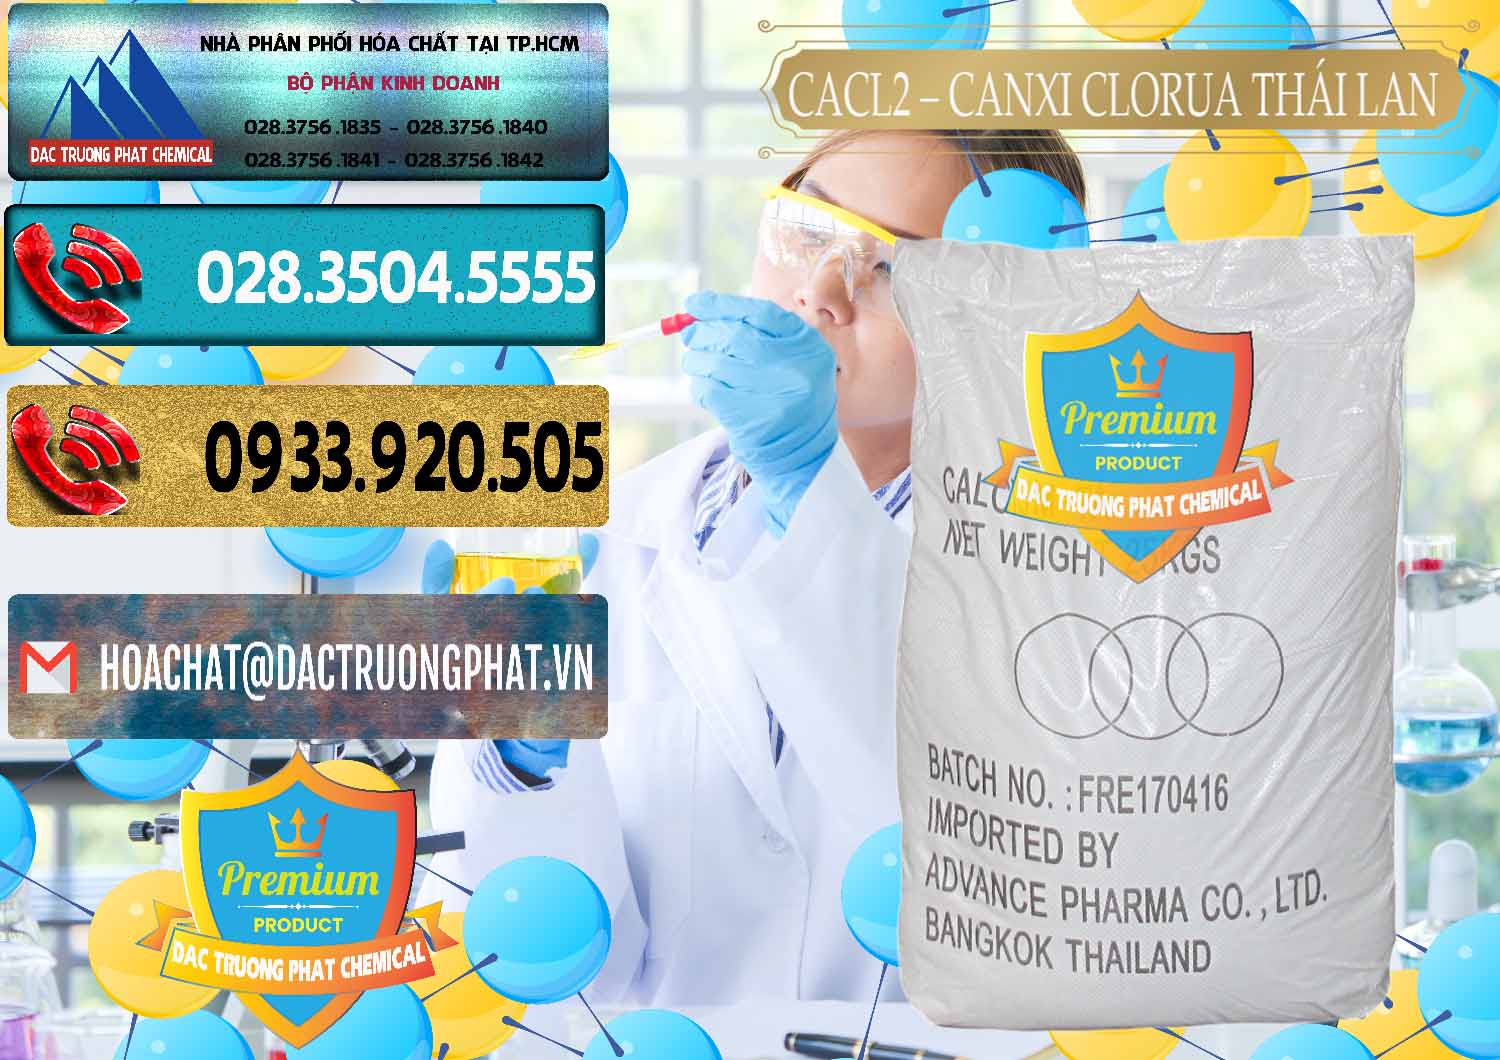 Công ty bán _ phân phối CaCl2 – Canxi Clorua 96% Thái Lan - 0042 - Nơi chuyên nhập khẩu _ cung cấp hóa chất tại TP.HCM - hoachatdetnhuom.com